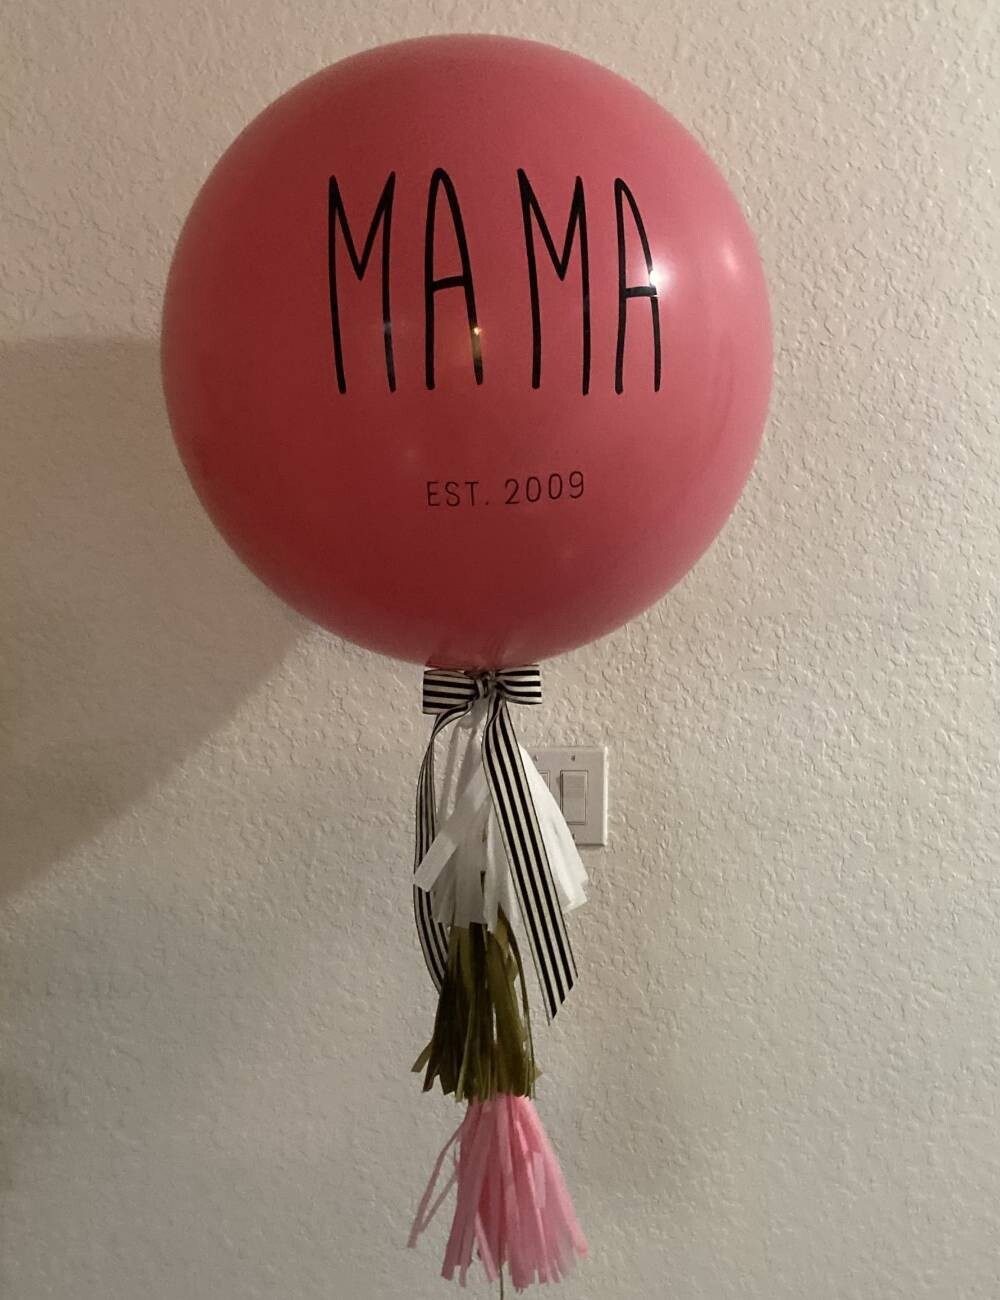 Customized MAMA est balloon